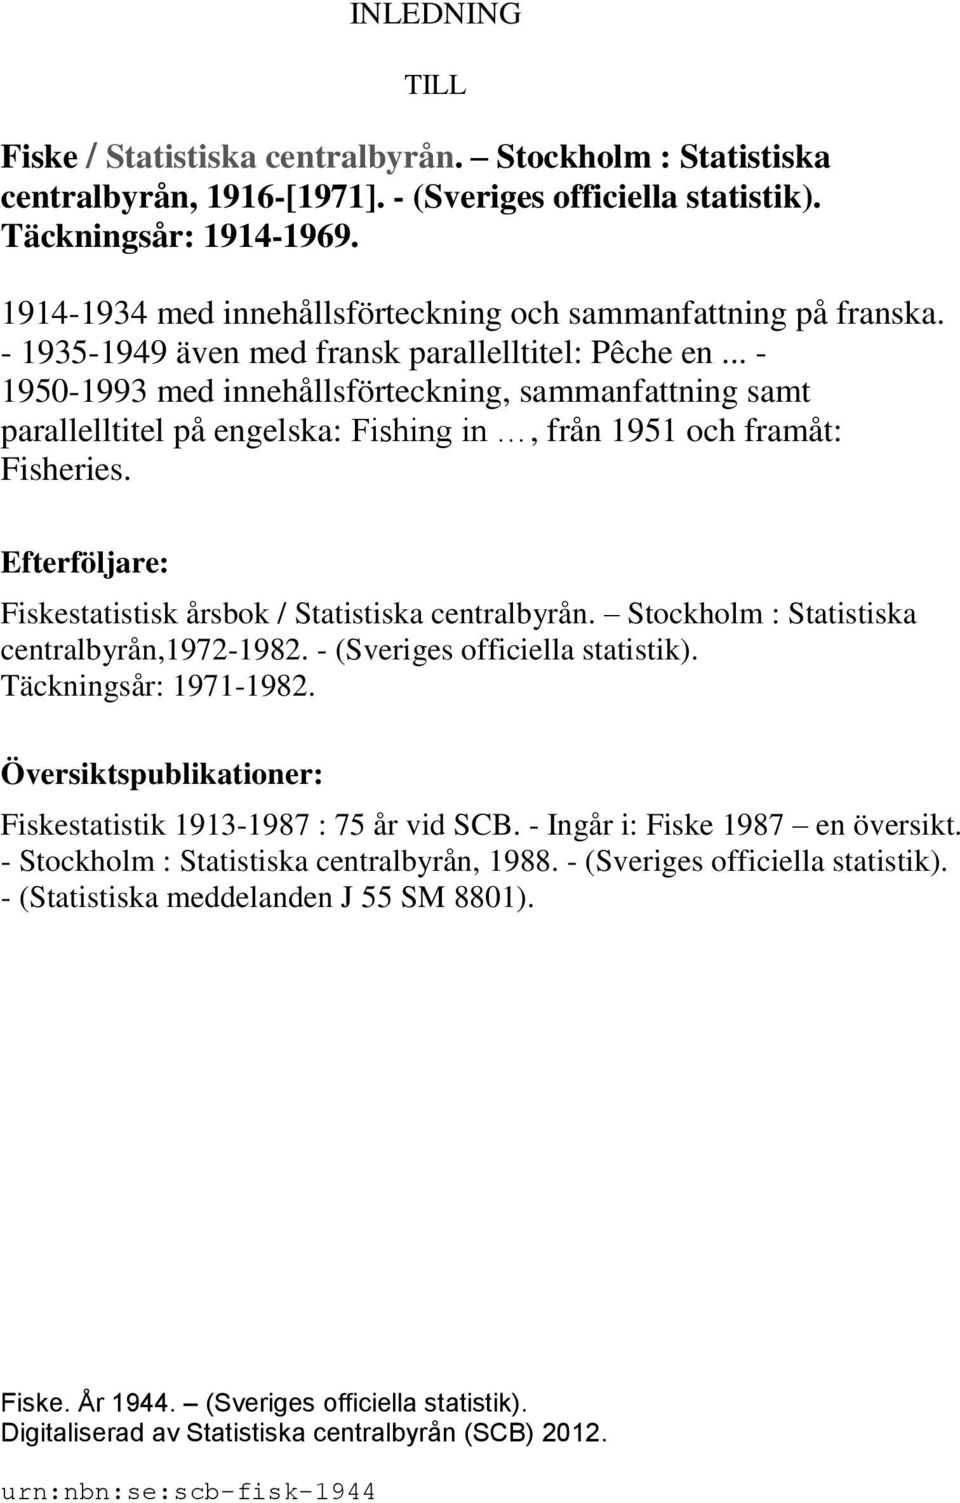 .. - 1950-1993 med innehållsförteckning, sammanfattning samt parallelltitel på engelska: Fishing in, från 1951 och framåt: Fisheries. Efterföljare: Fiskestatistisk årsbok / Statistiska centralbyrån.